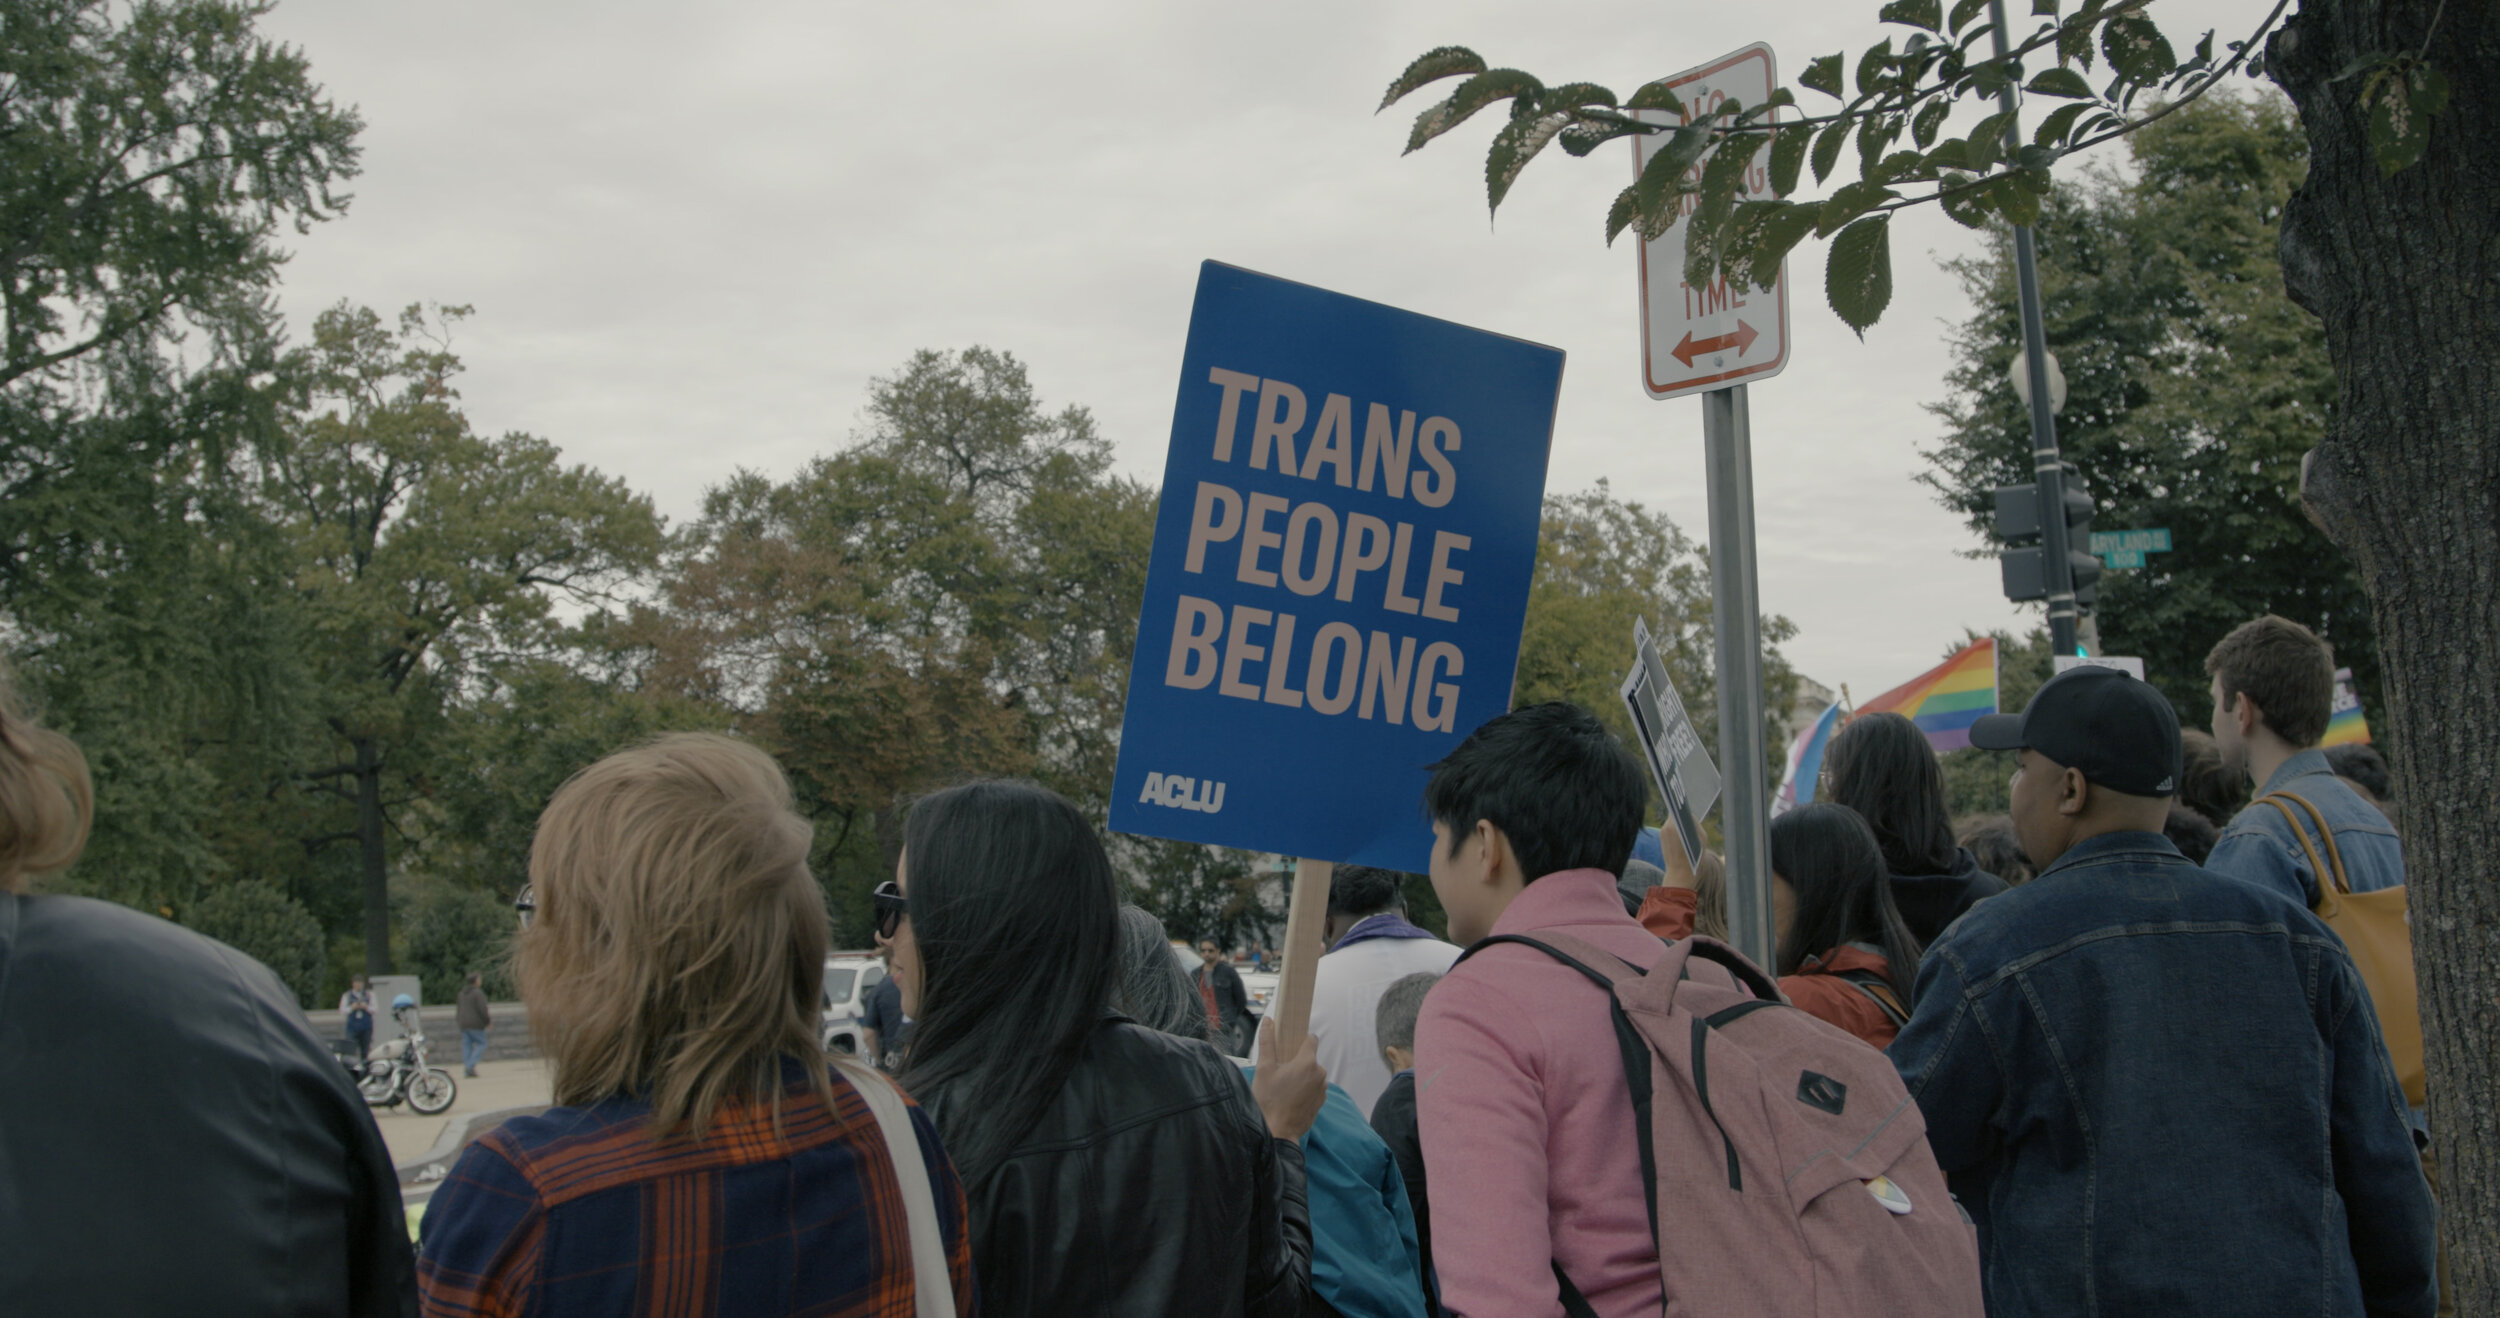 sign-trans-people-belong1.jpg